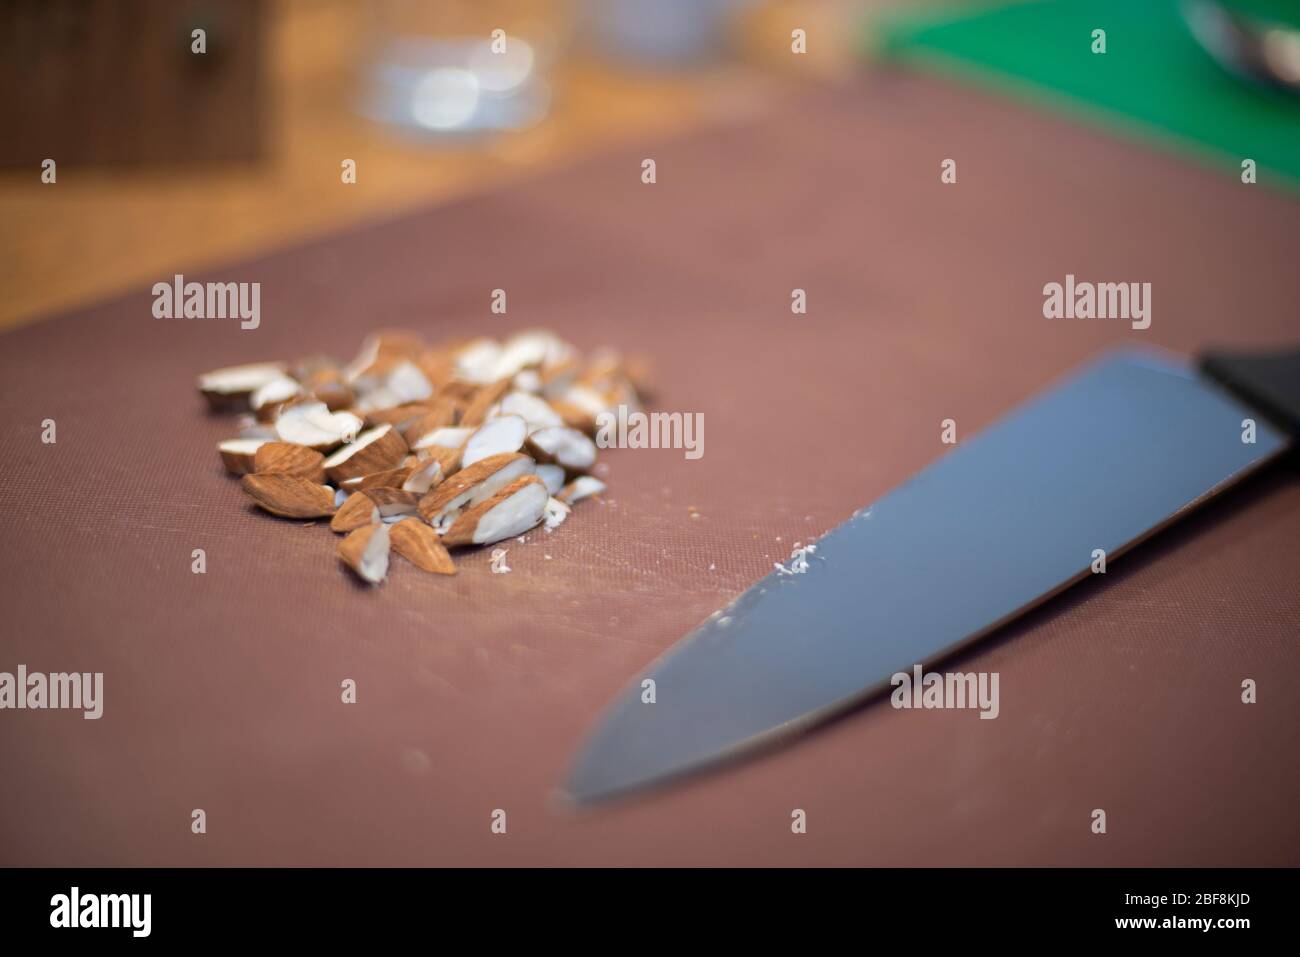 Una manciata di mandorle, appena tritate, giacciono su un tagliere accanto a un coltello in acciaio inossidabile all'interno di una cucina Foto Stock